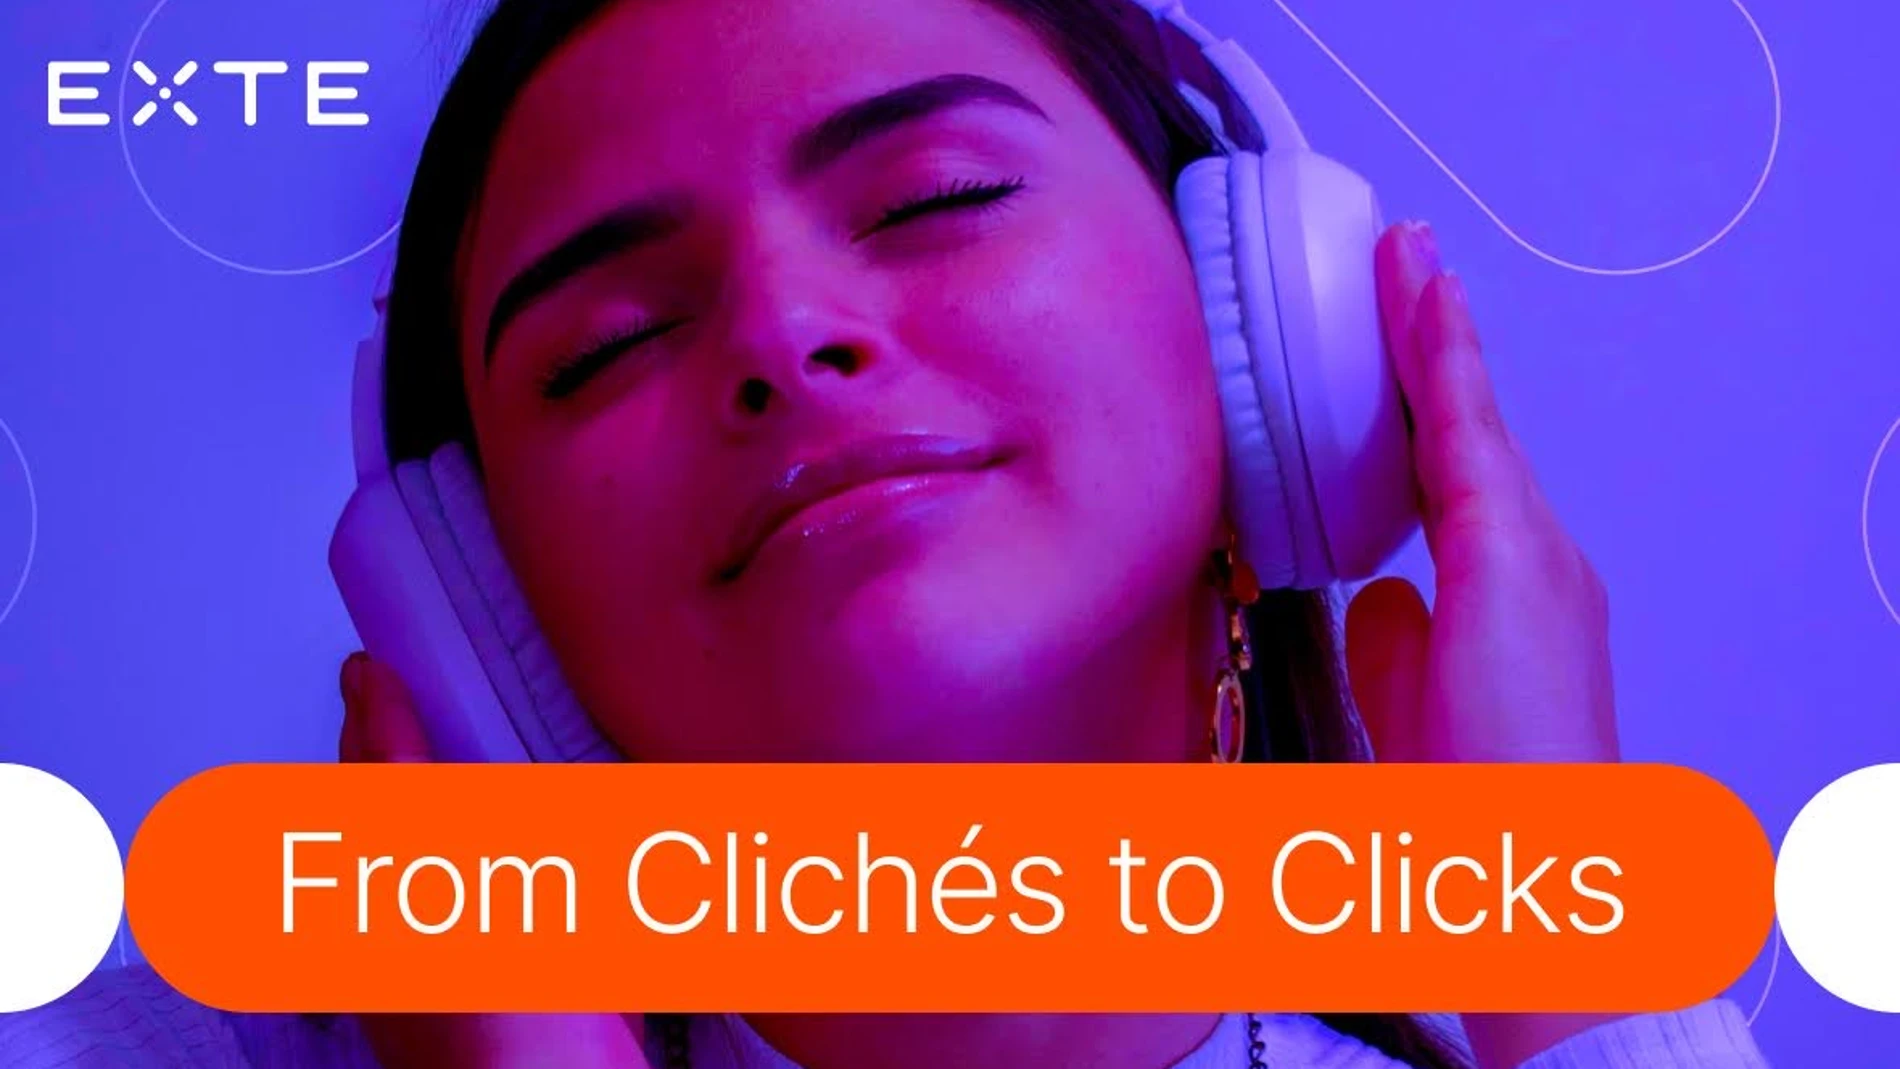 EXTE lanza el estudio "From Clichés to Clicks": desafiando estereotipos de género en la publicidad digital